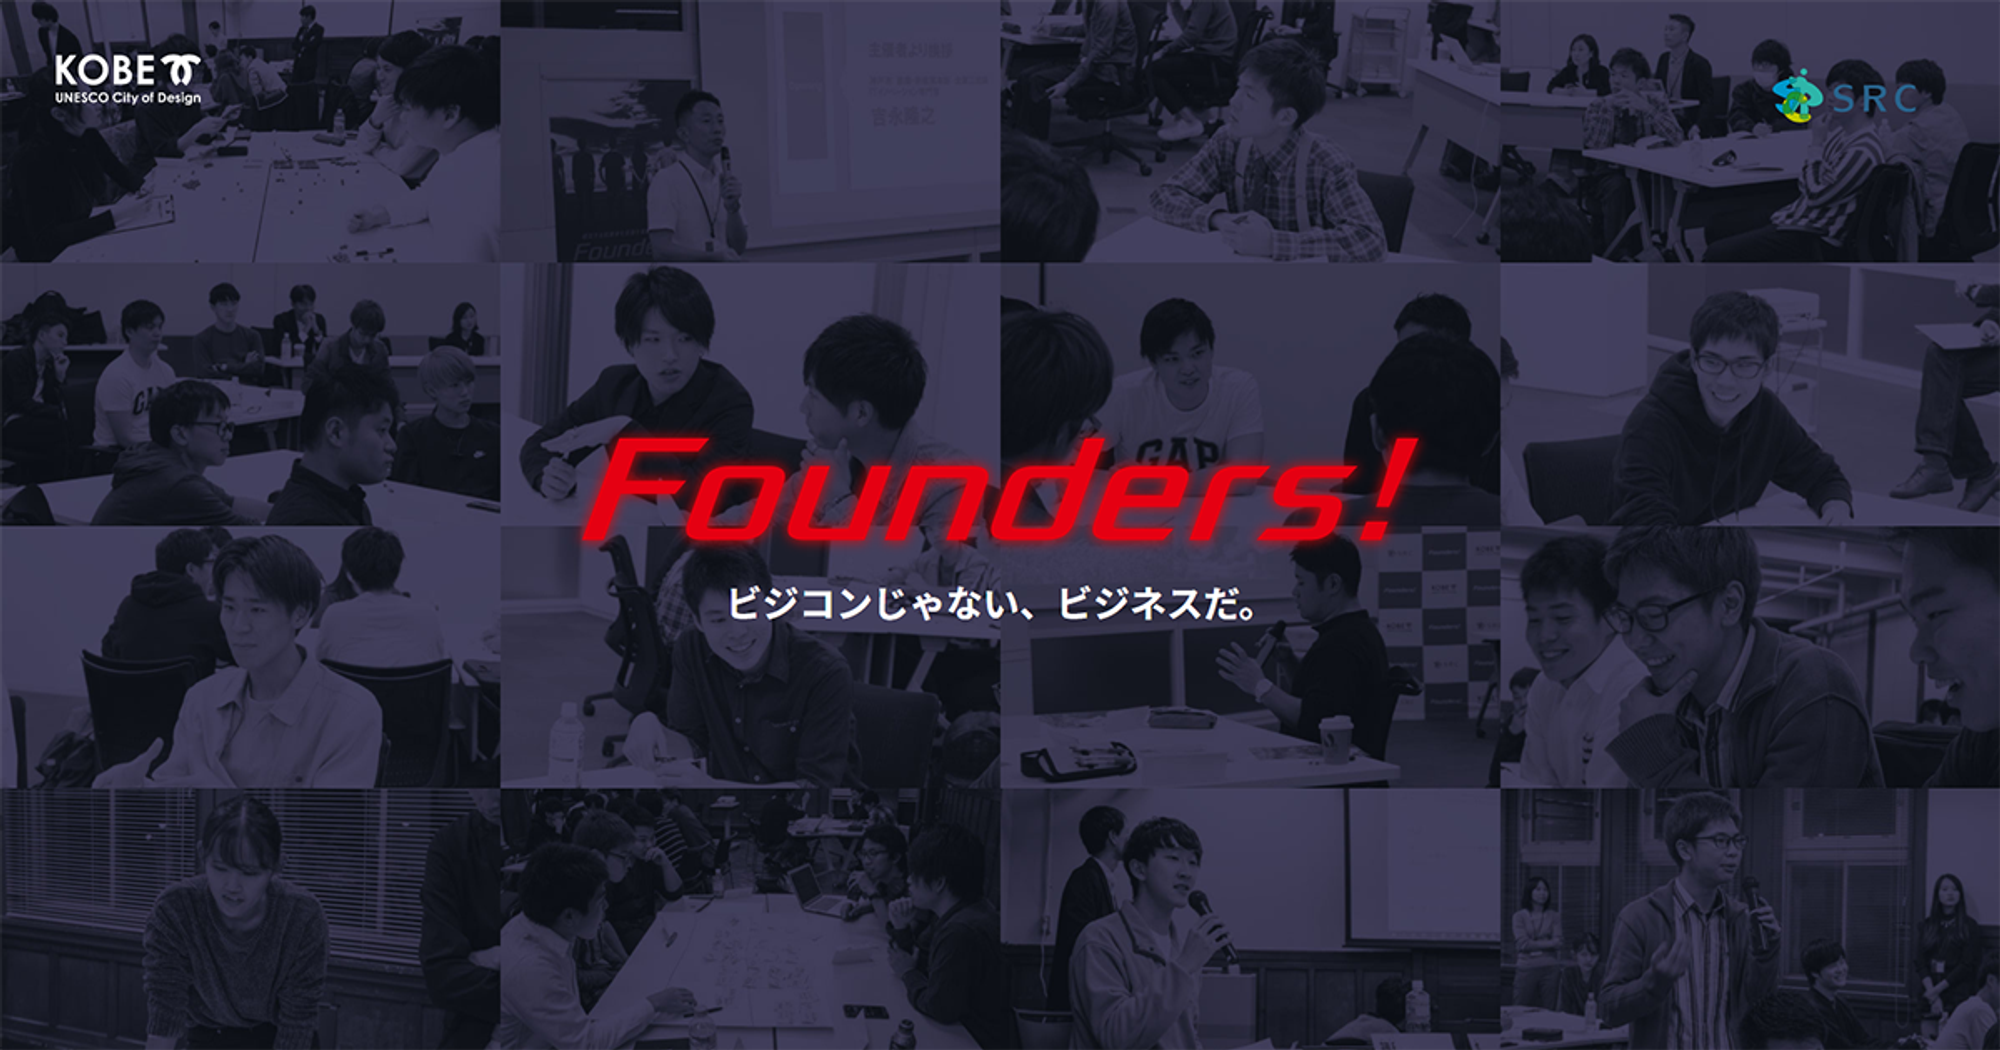 起業家育成プログラムFounders!